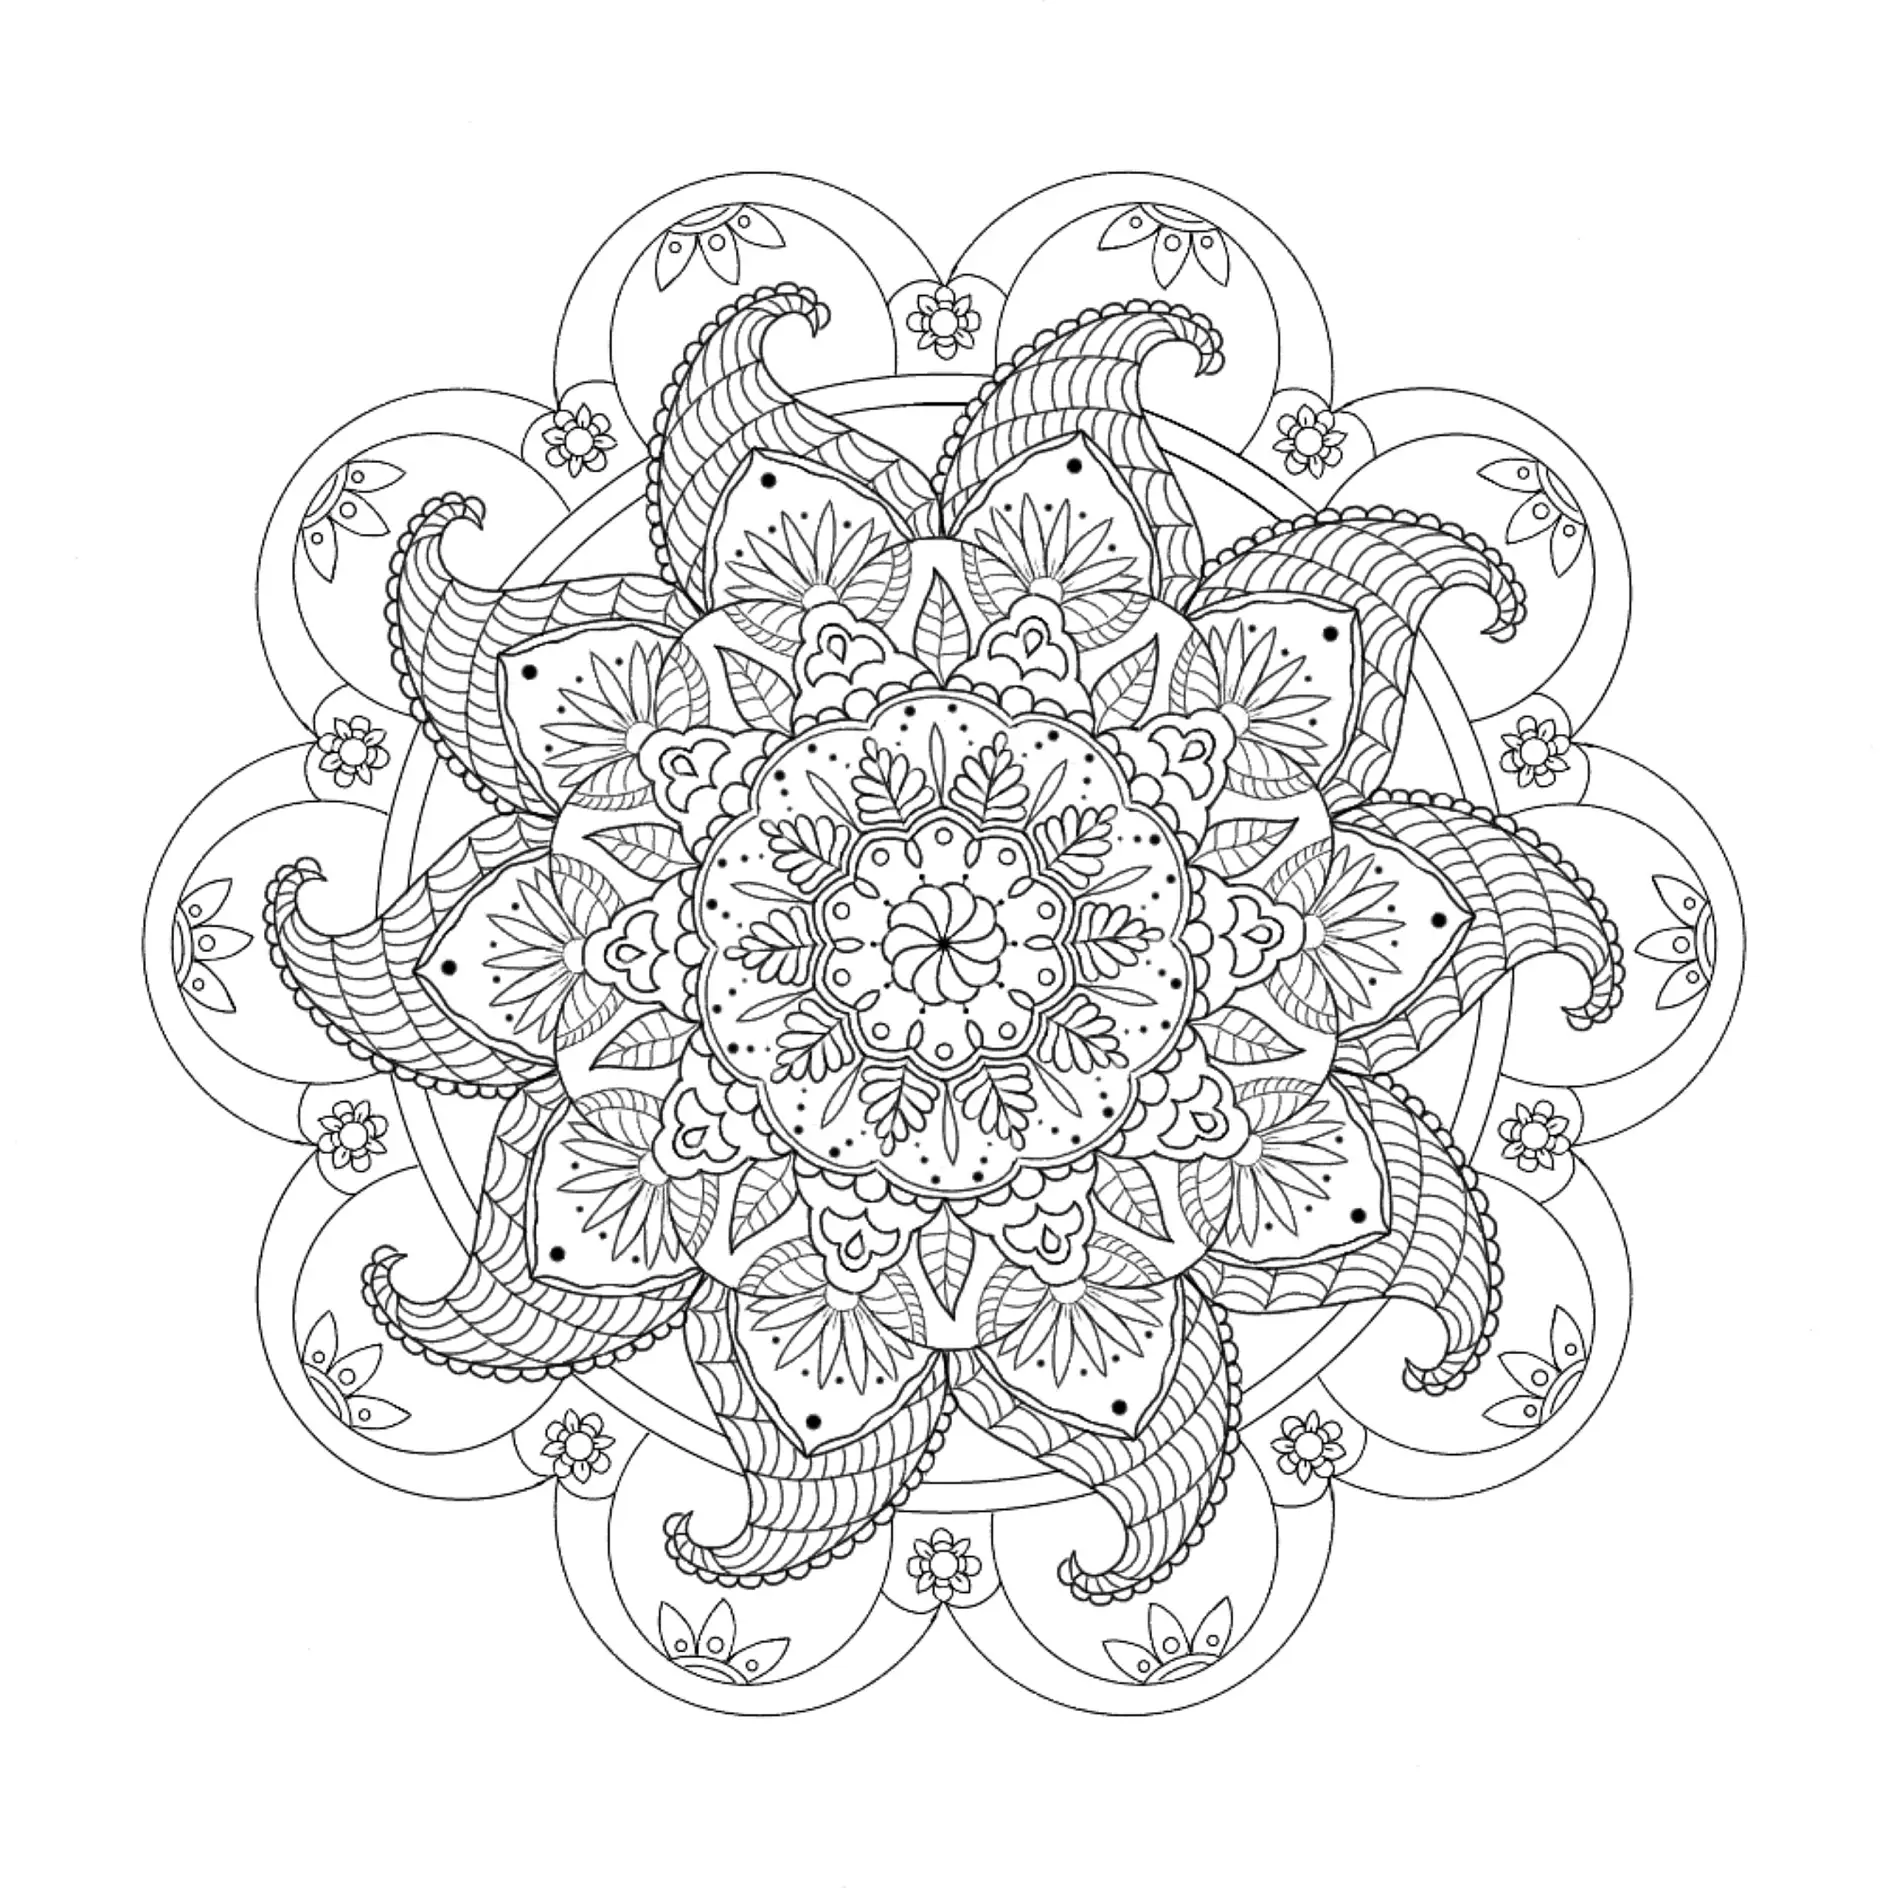 Ausmalbild Mandala mit floralem Muster und geschwungenen Elementen